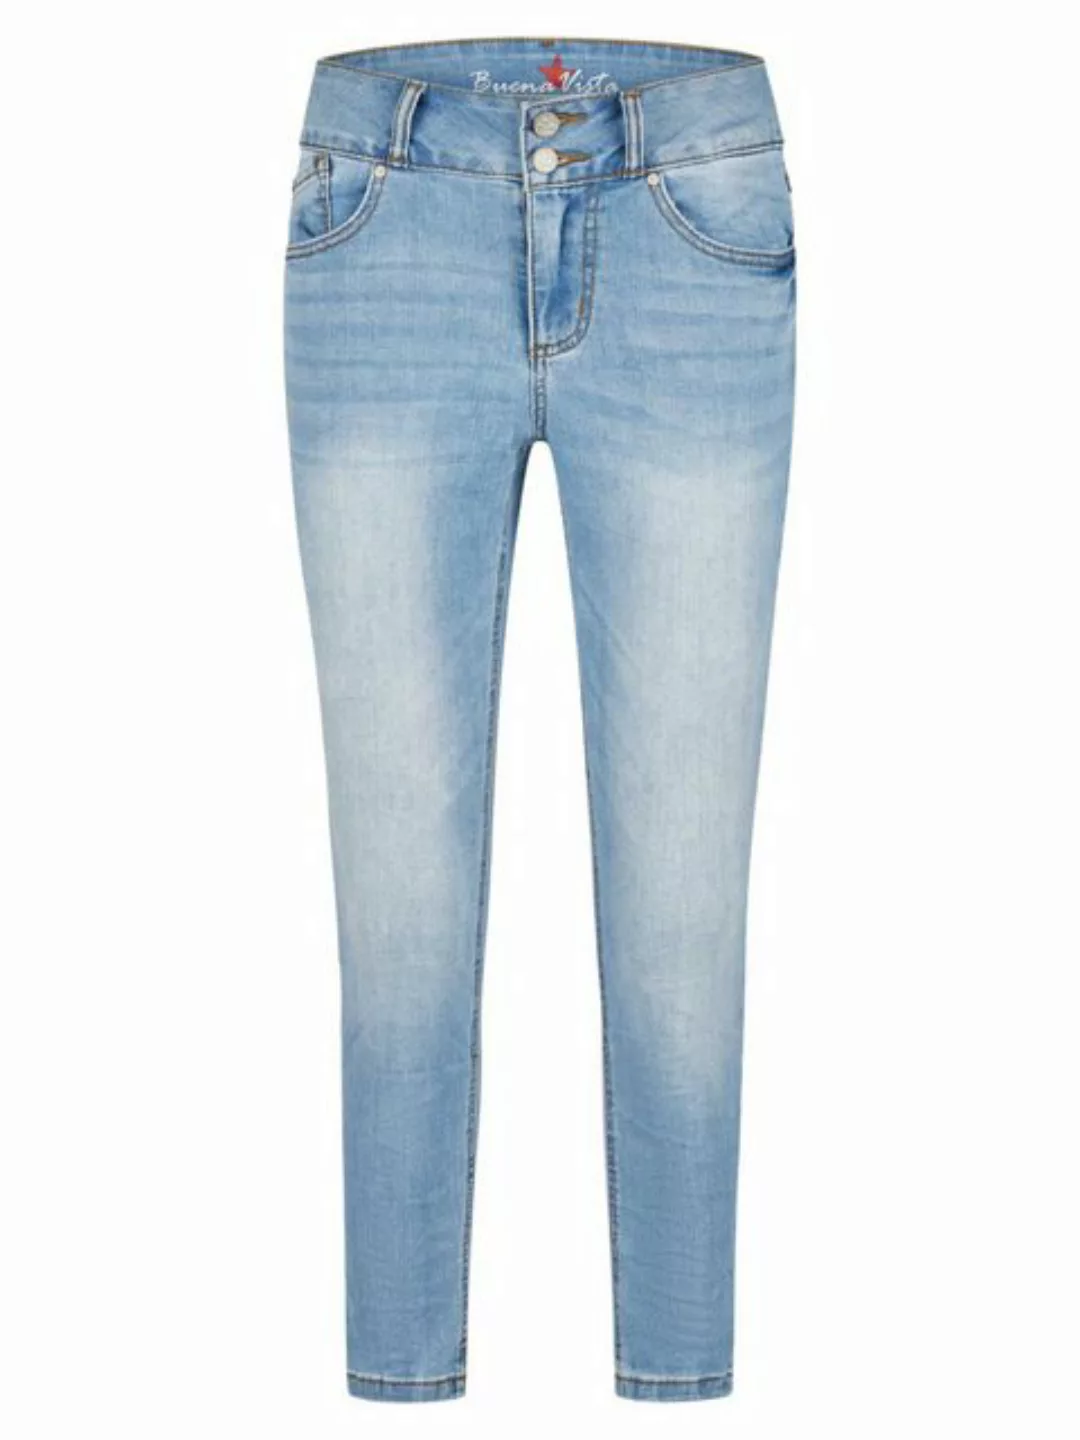 Buena Vista Stretch-Jeans BUENA VISTA TUMMYLESS 7/8 azur denim 2401 B5658 3 günstig online kaufen